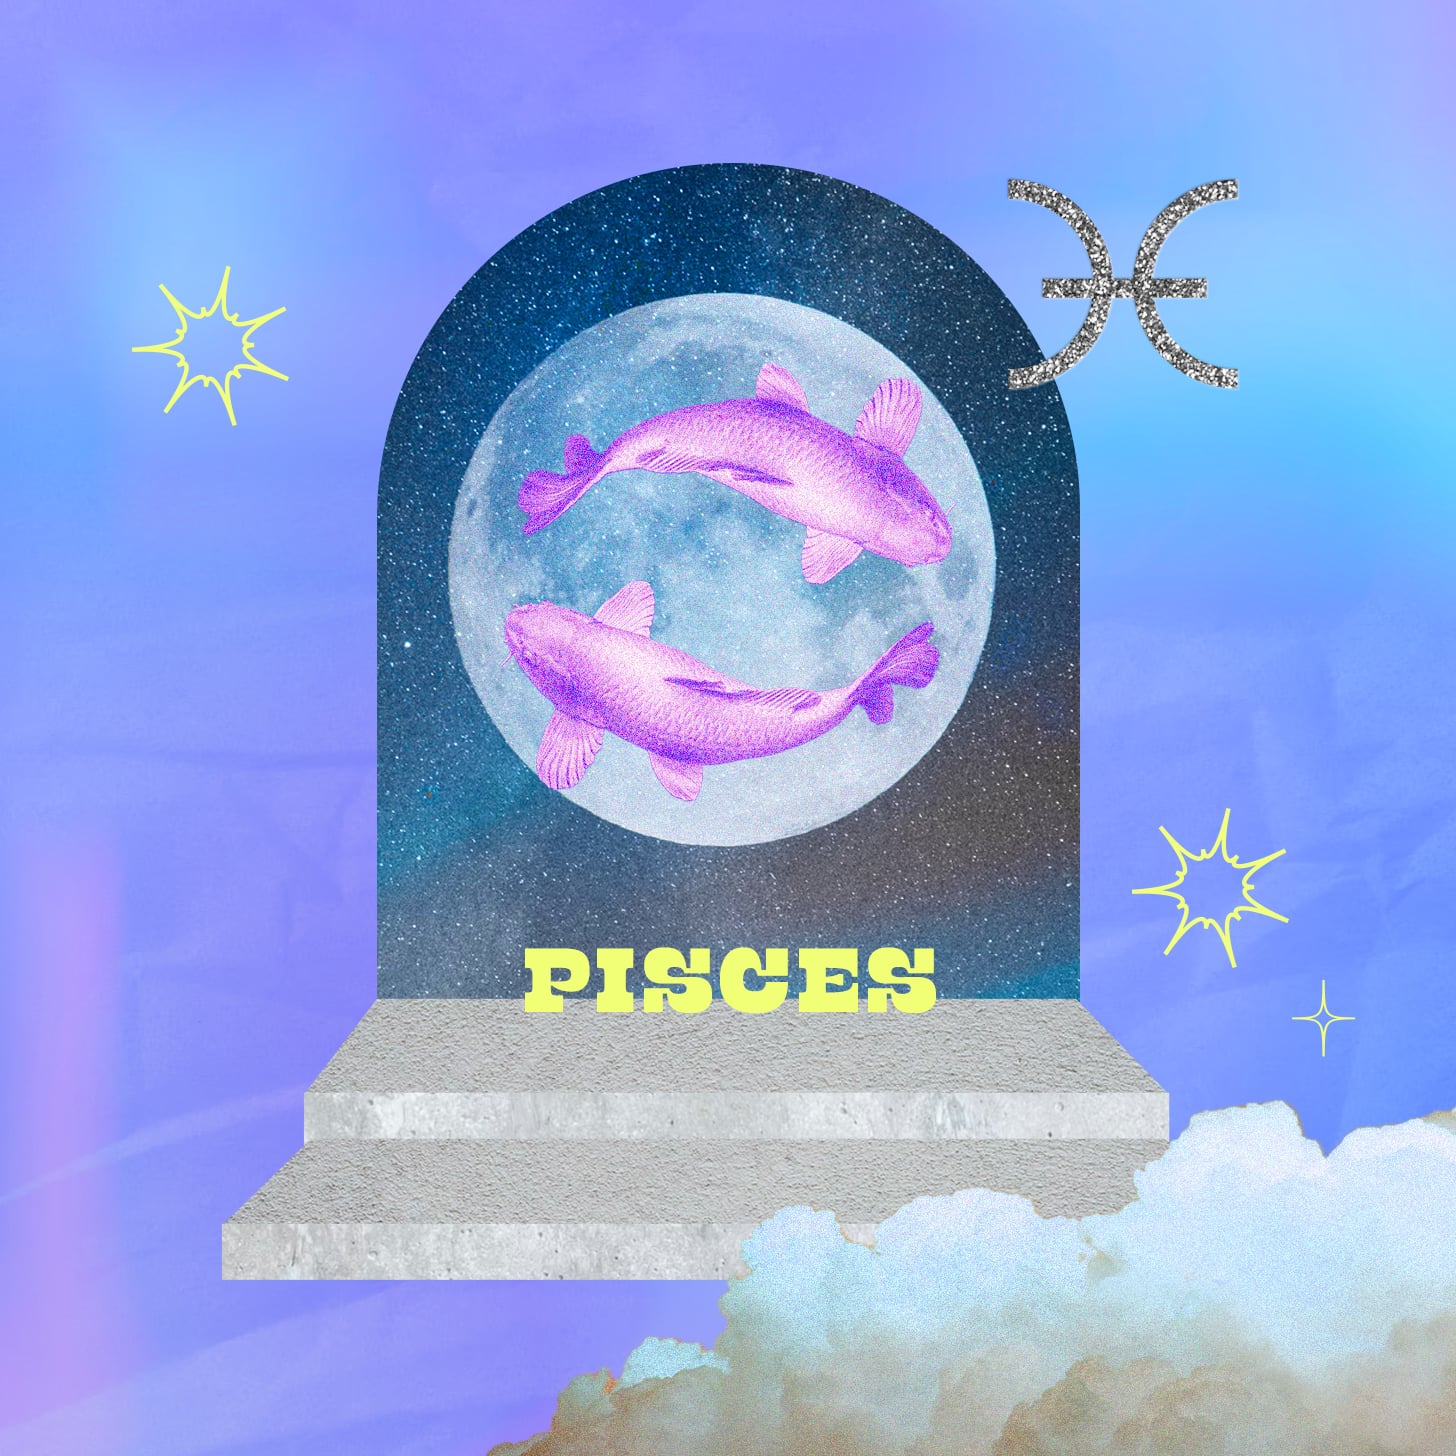 Pisces weekly horoscope for September 25, 2022